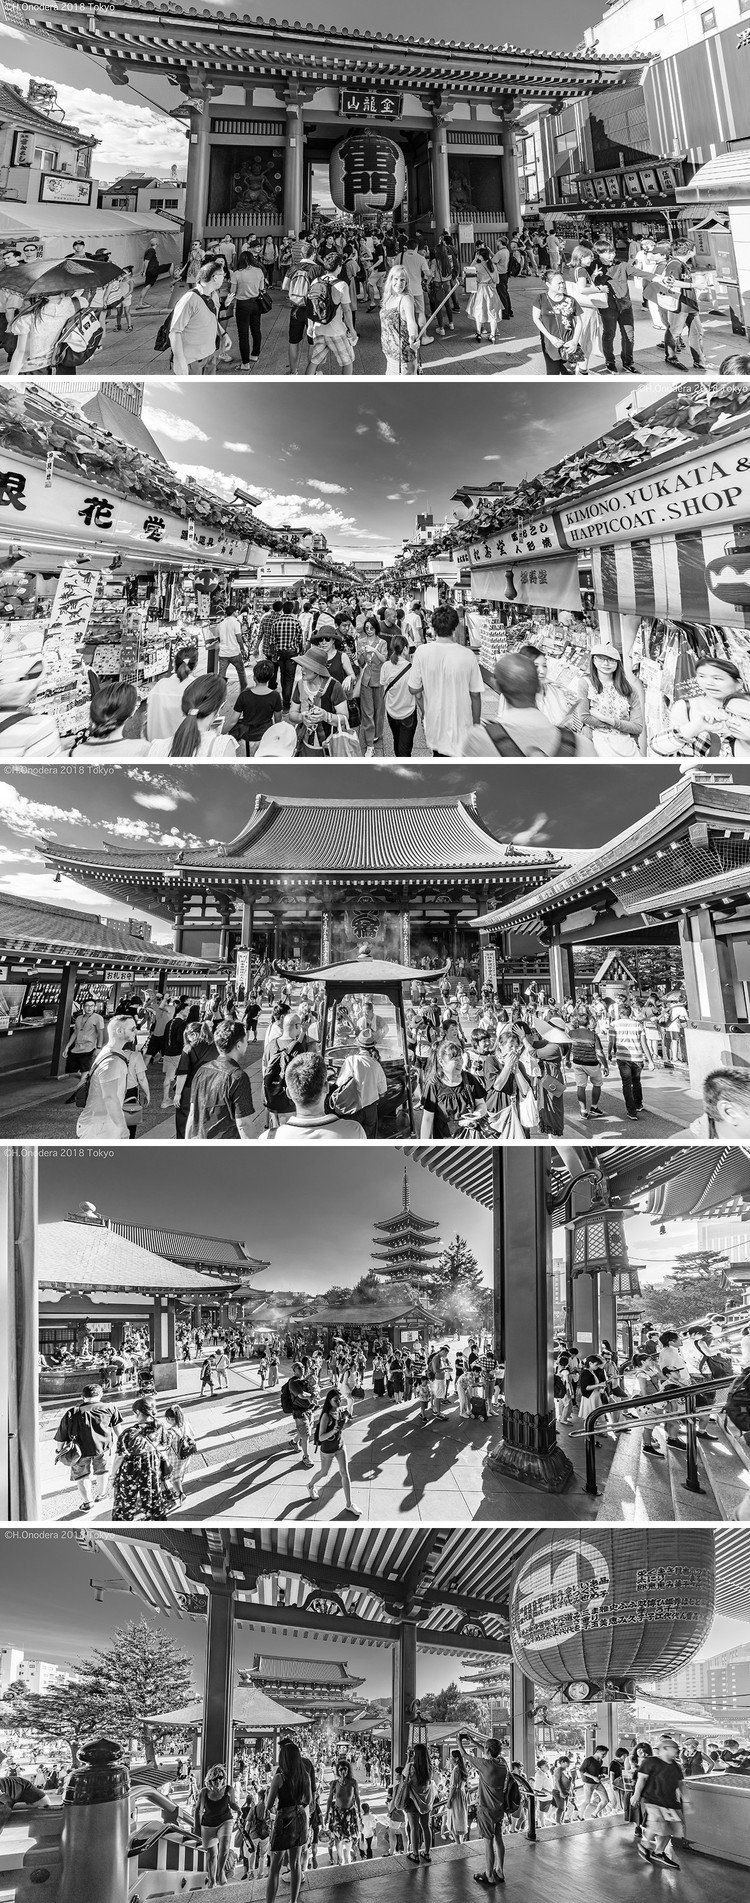 8月酷暑の中、浅草サンバカーニバルを撮りに行った際にあまりにもバテてどっかの店でちょいと休憩でも、と思ったものの、この膨大な人出の時に雷門〜浅草寺までを撮らないでどーする！（また来るのめんどくさい…）とゆーことでフラフラしながらも観光地に集まる群集を撮りに寄ったのデシタ。疲れた。